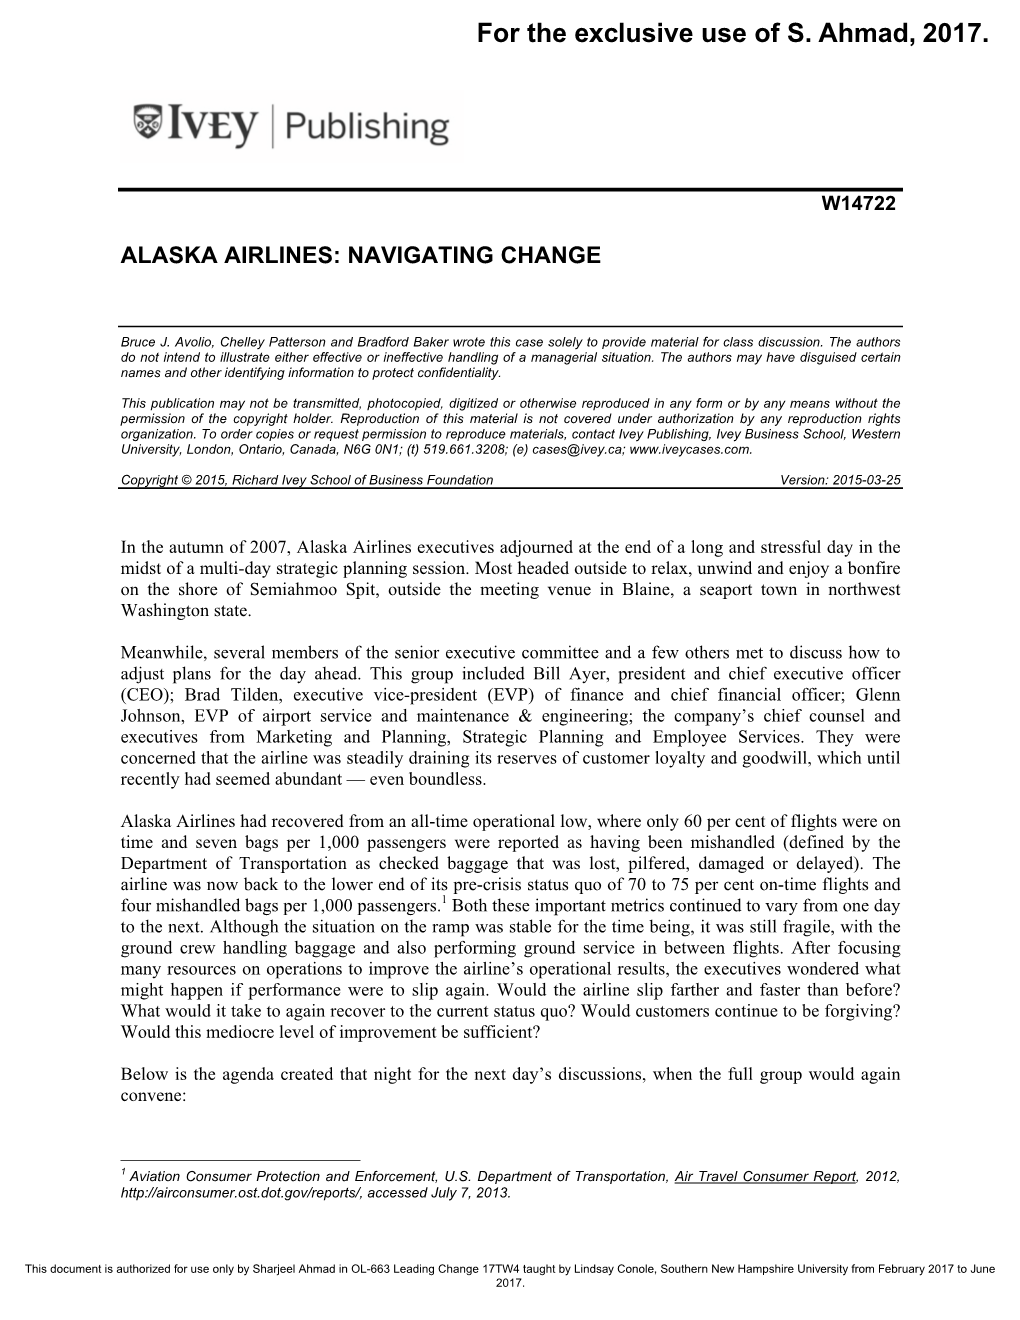 Alaska Airlines: Navigating Change